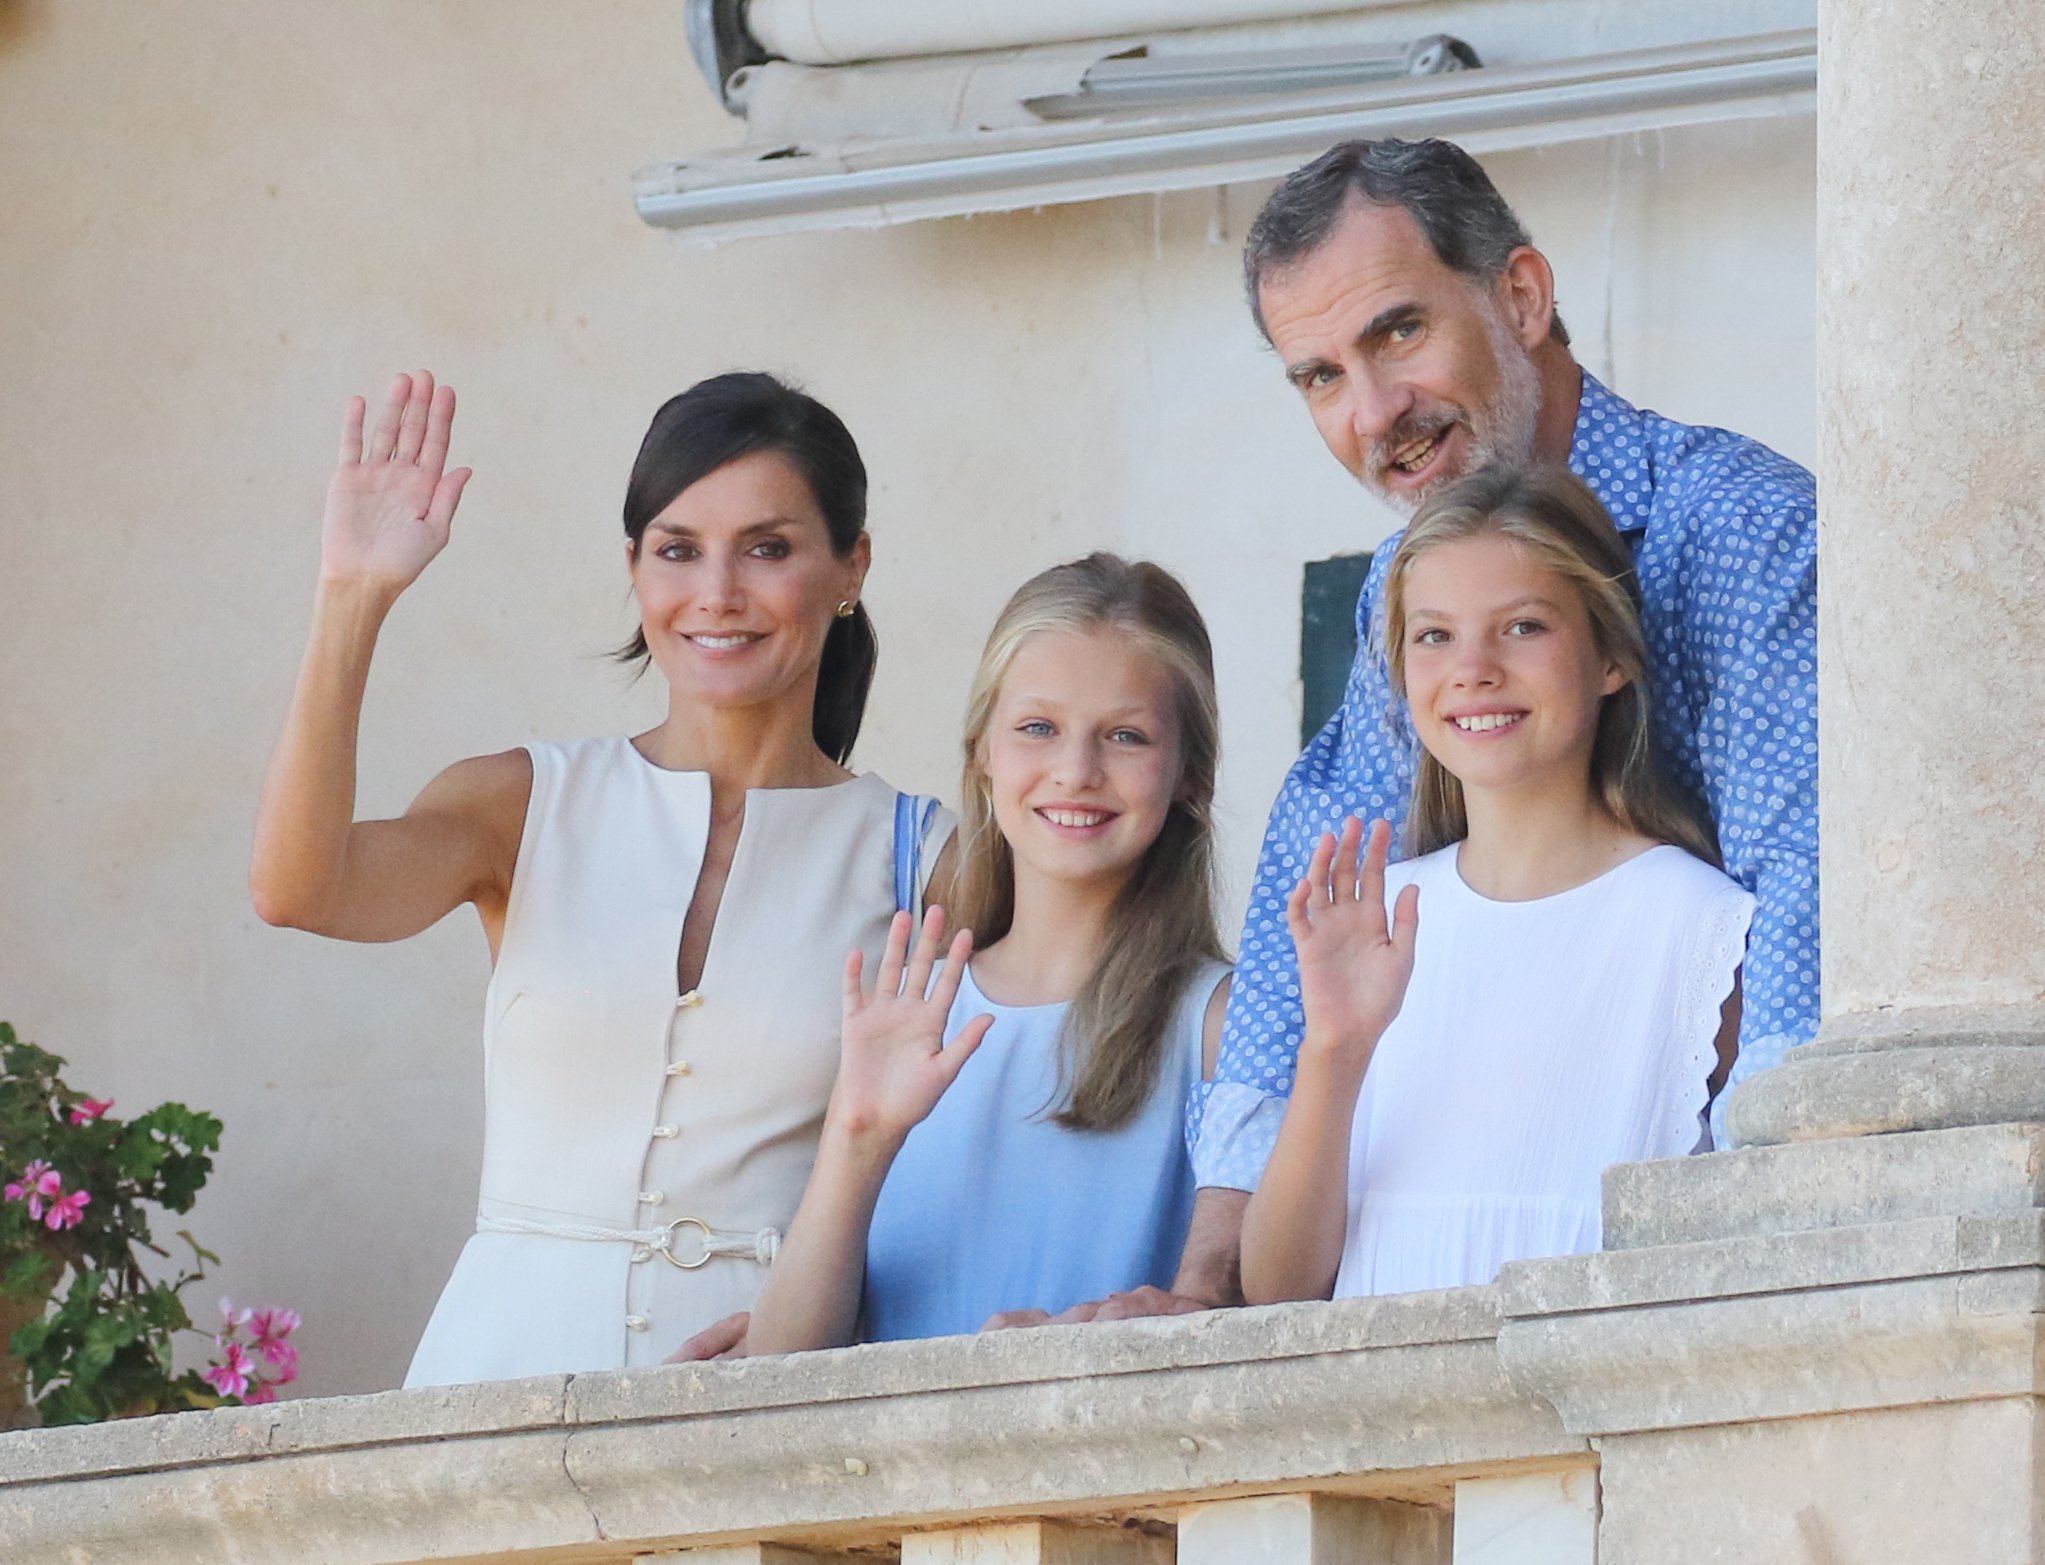 El rey Felipe VI de España, la reina Letizia de España, la princesa Leonor de España y la princesa Sofía de España (R) visitan el museo 'Son Marroig' el 8 de agosto de 2019 en Palma de Mallorca, España. | Foto: Getty Images